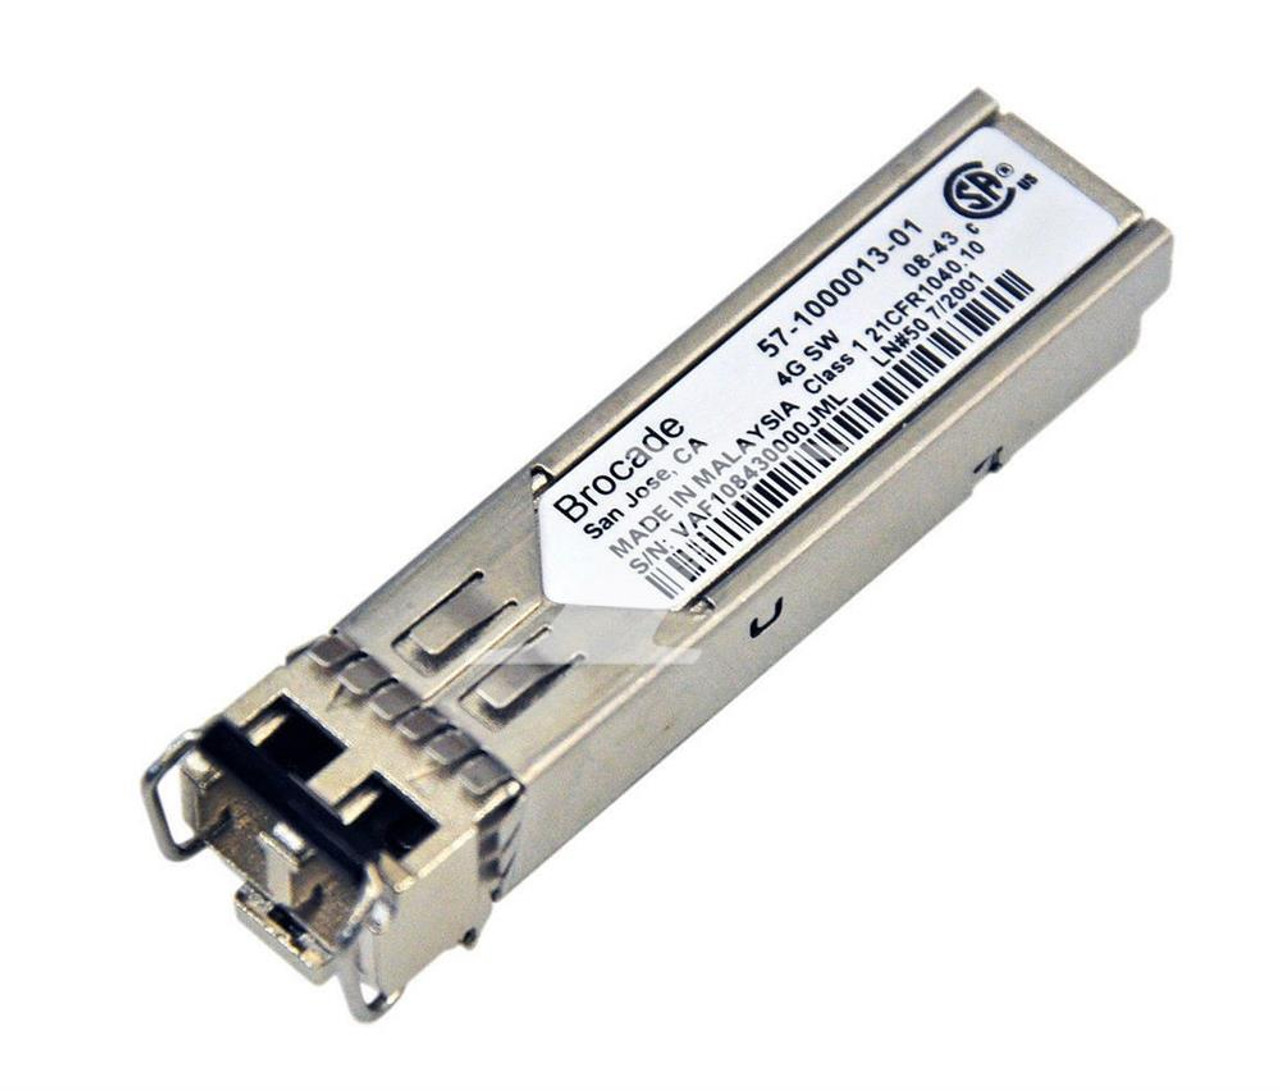 XBR-000200 Brocade 4Gb Fibre Channel SFP (mini-GBIC) Module 1 x Fiber Channel SFP (mini-GBIC)